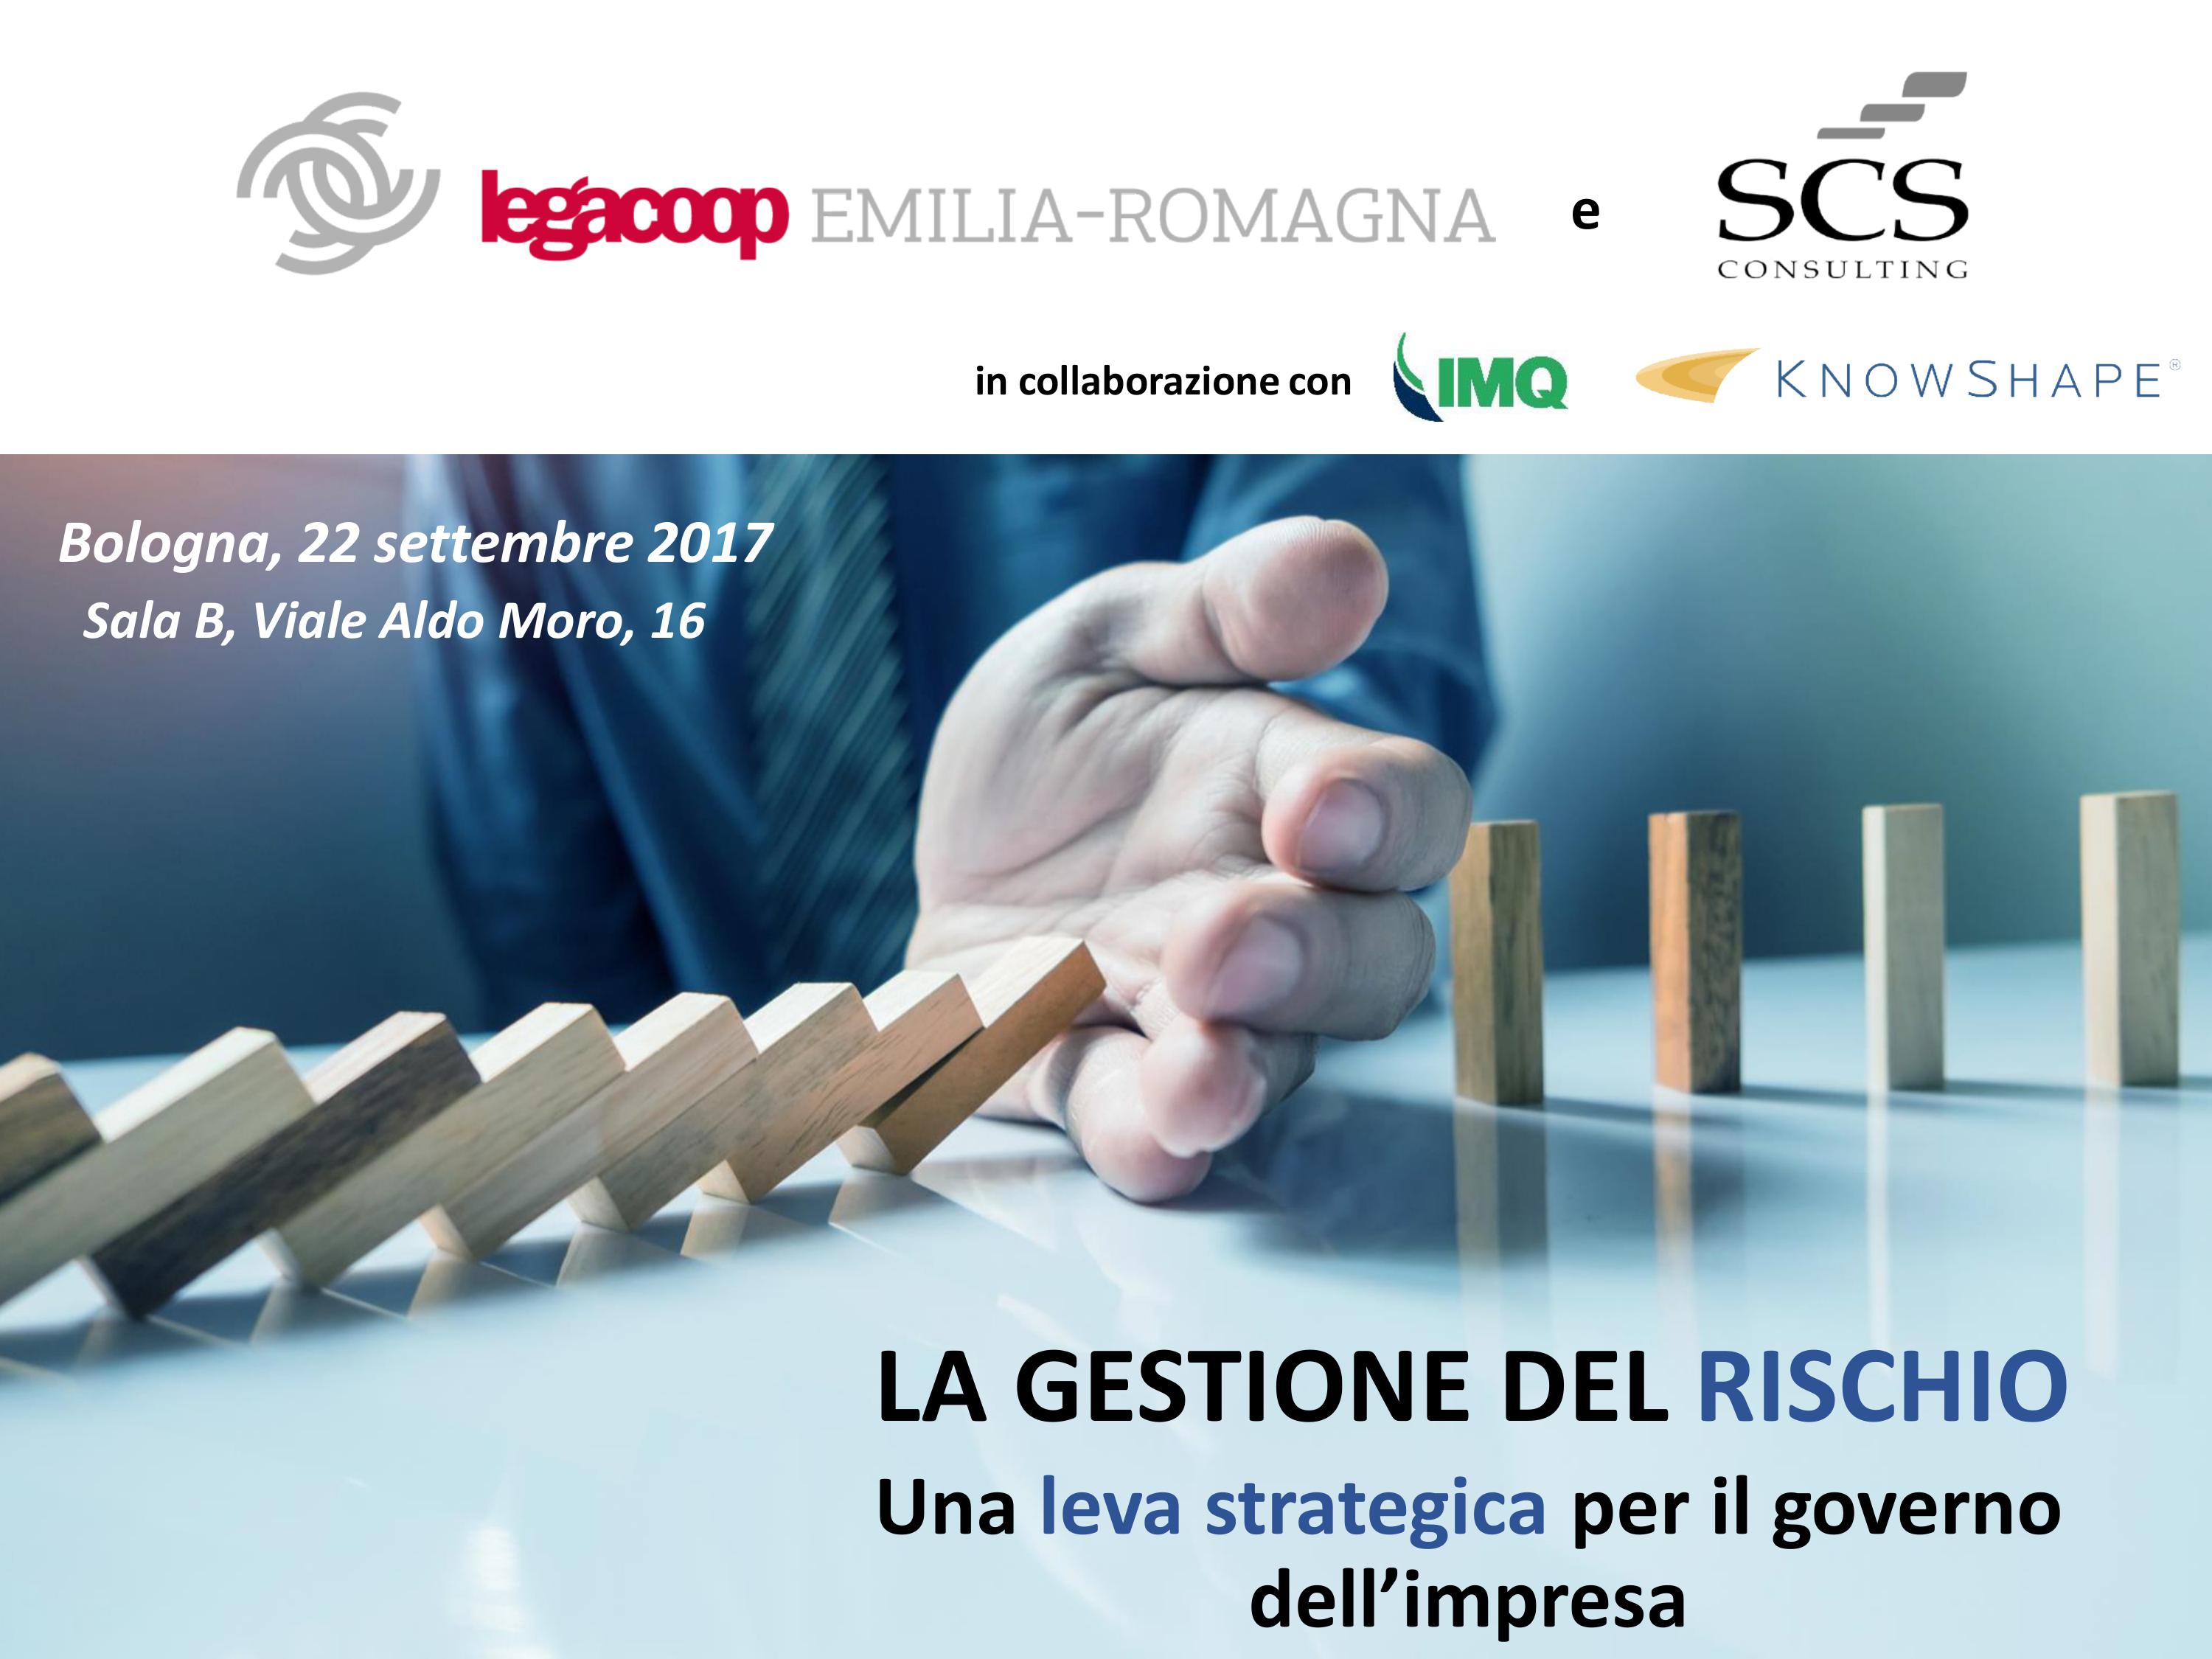 “La gestione del rischio”: venerdì 22 settembre a Bologna un’iniziativa promossa da Legacoop Emilia-Romagna e SCS Consulting